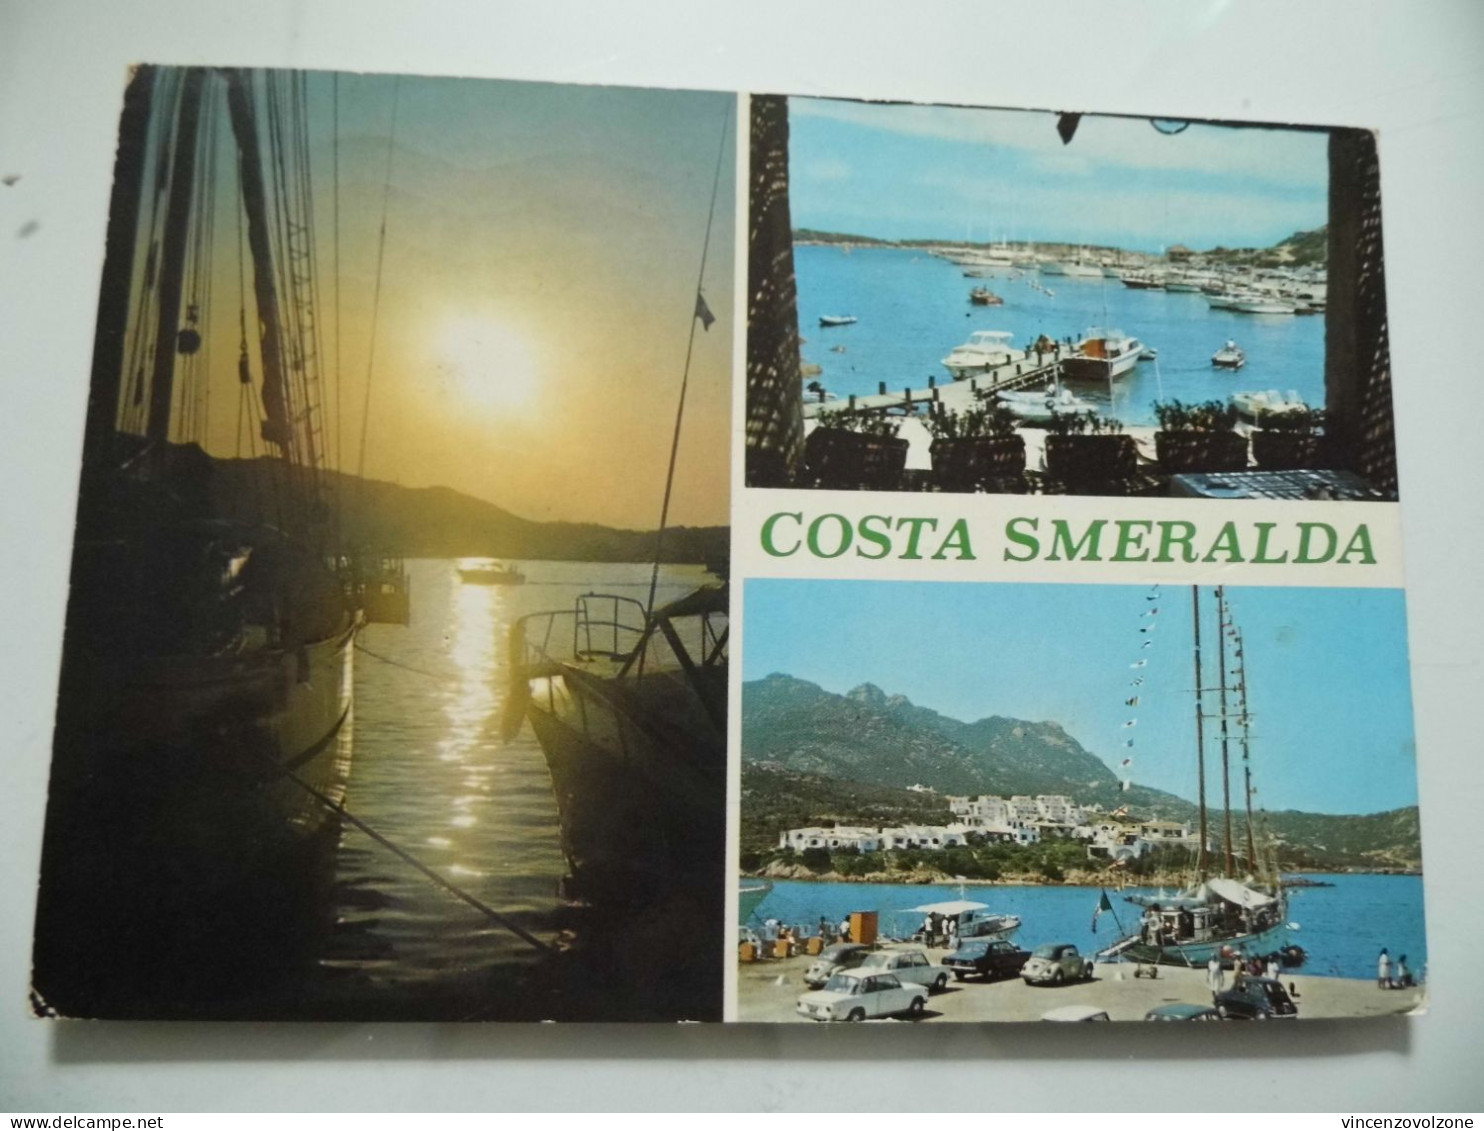 Cartolina Viaggiata "COSTA SMERALDA" Vedutine 1977 - Sassari